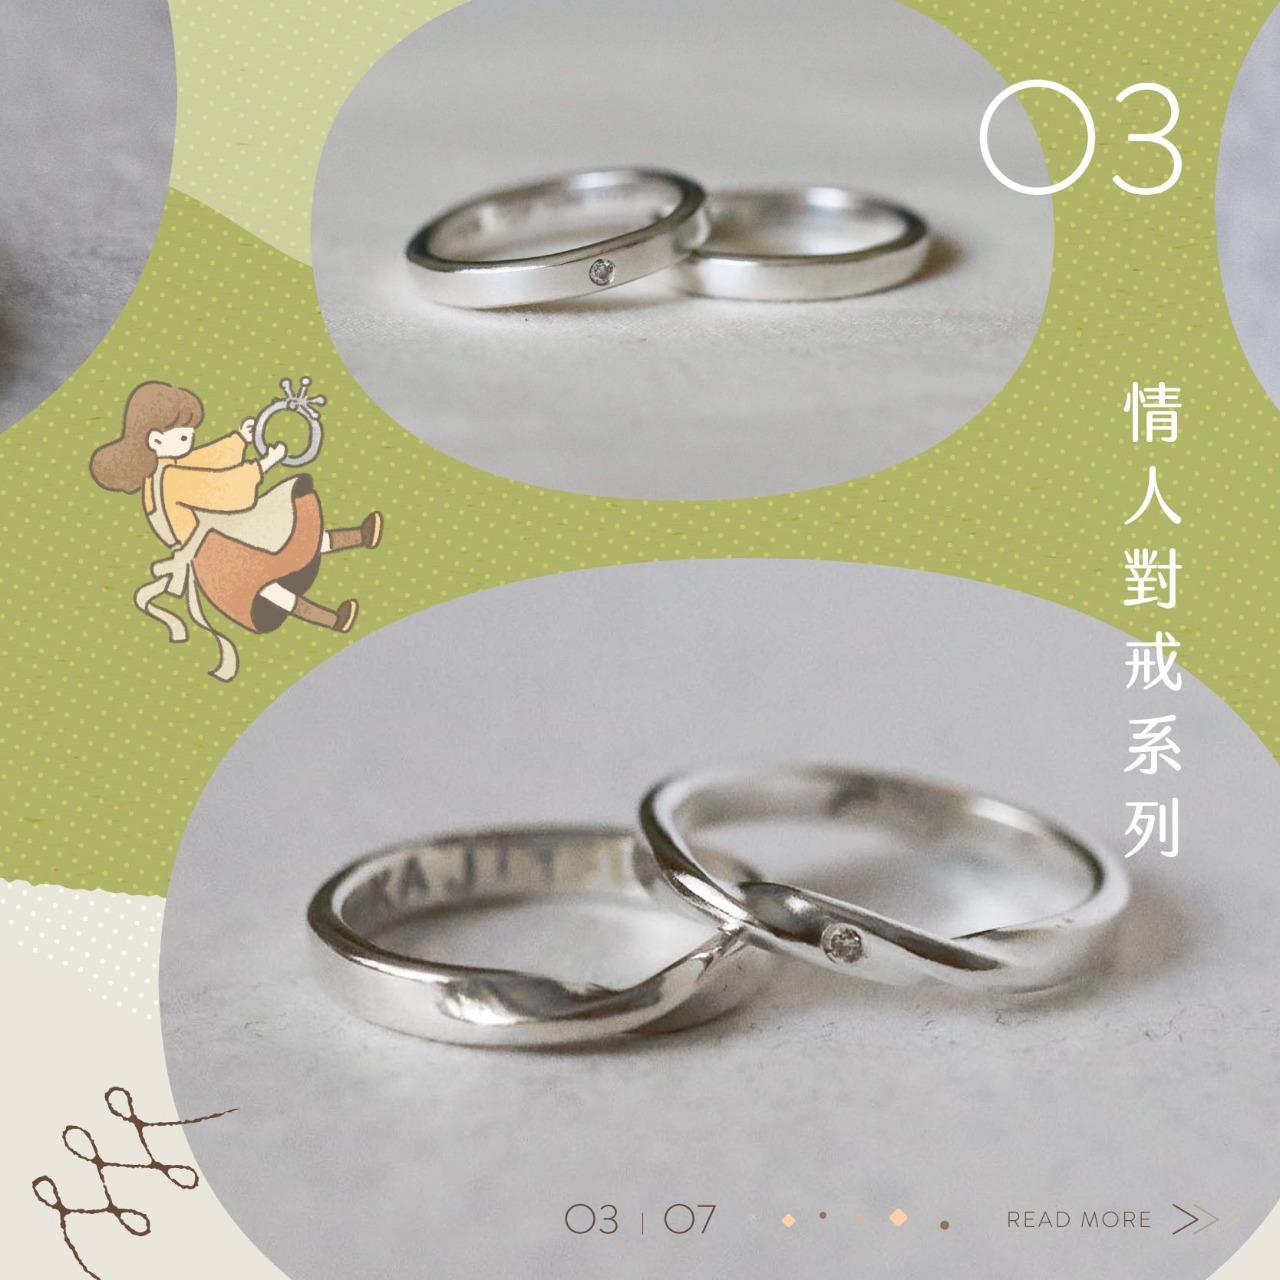 暖果 Kajitsu jewelry 戒指 金工 訂製 訂做 對戒 婚戒 課程 暖果